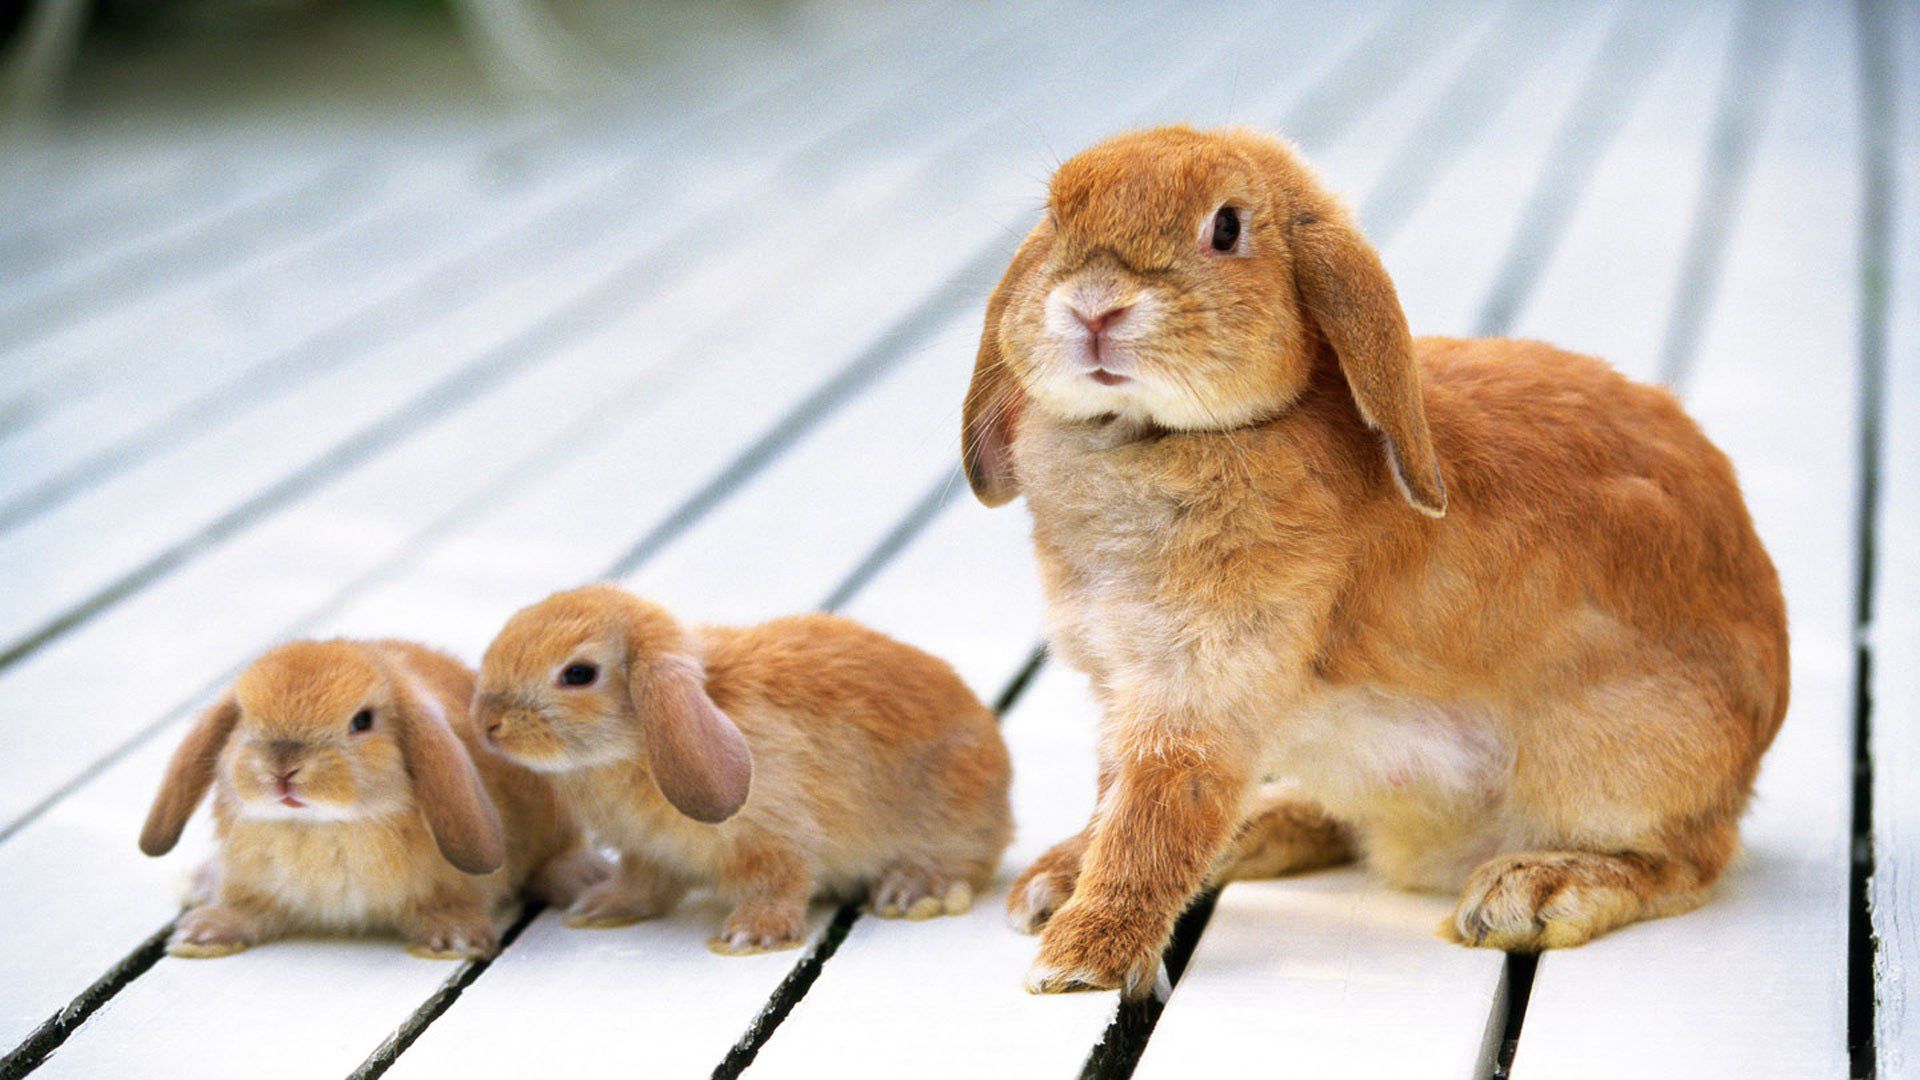 Семейство кроликов